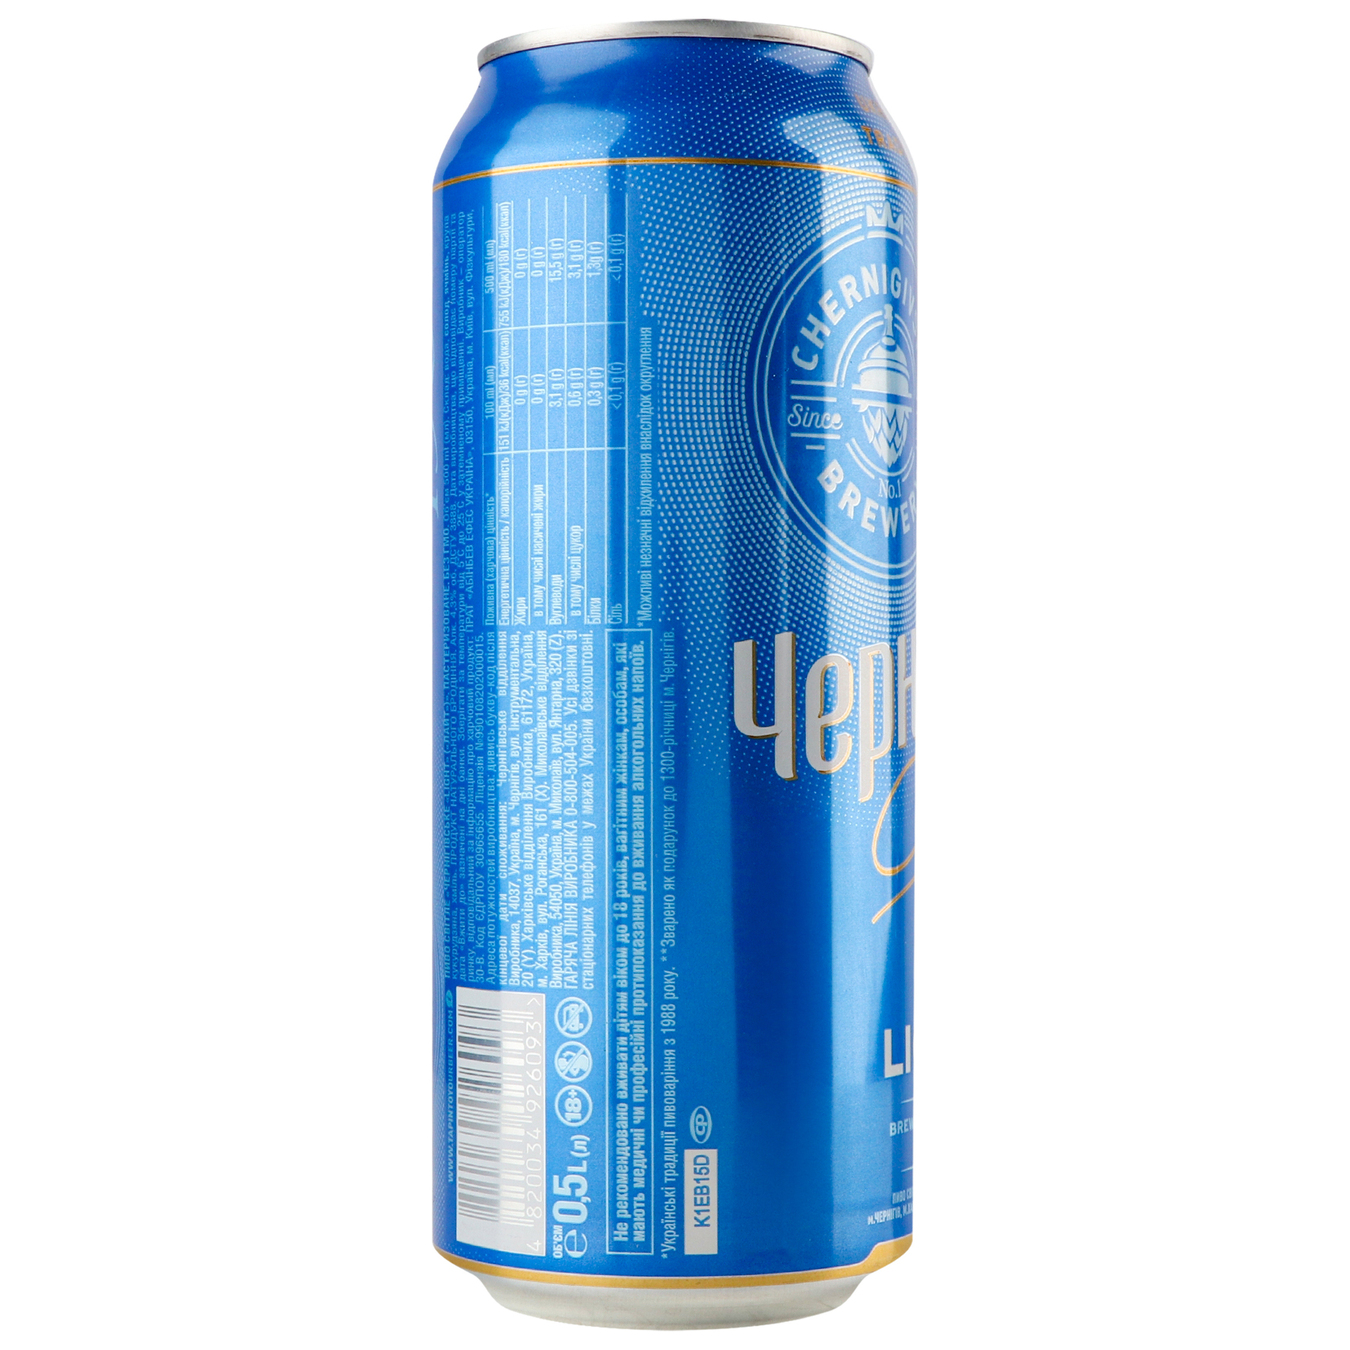 Light beer Chernihivske Light 5% 0.5 l b/w 2